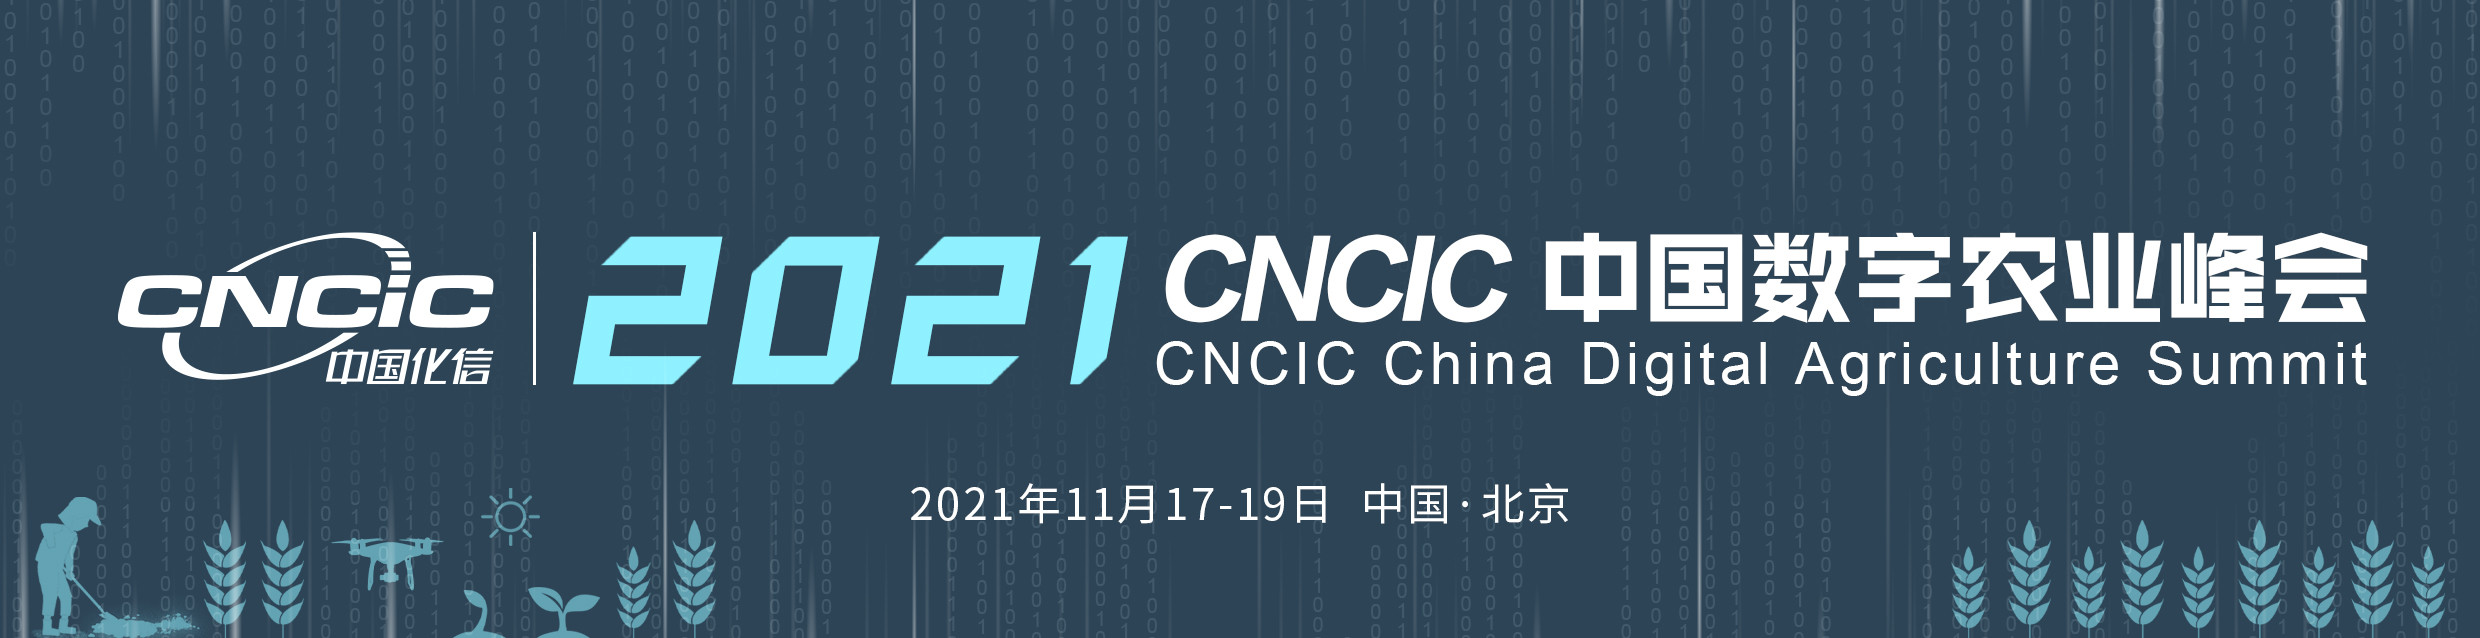 2021CNCIC中国数字农业峰会